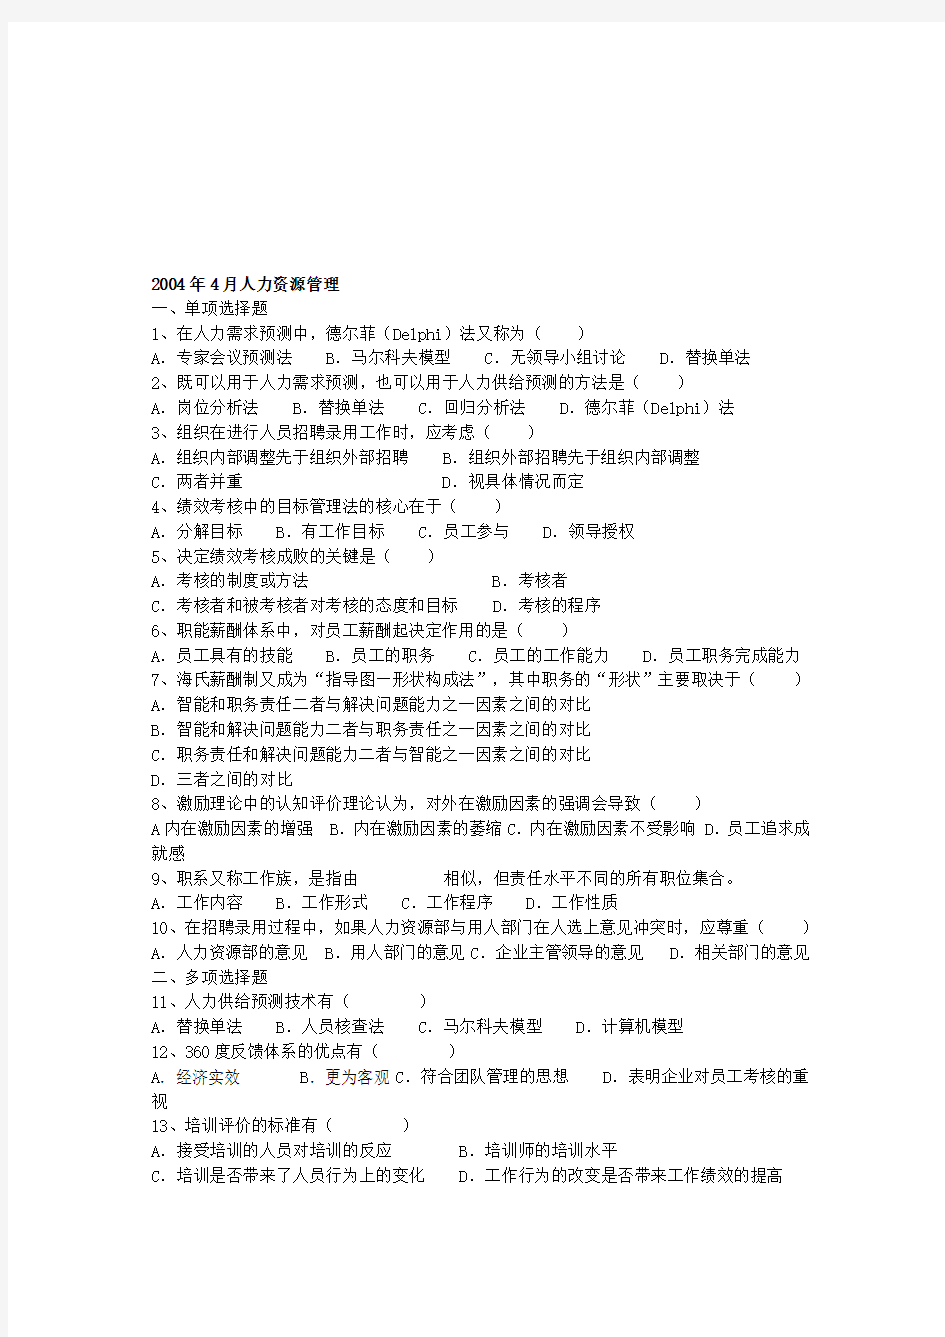 人力资源管理北京自考试卷(2004——2009年)带答案